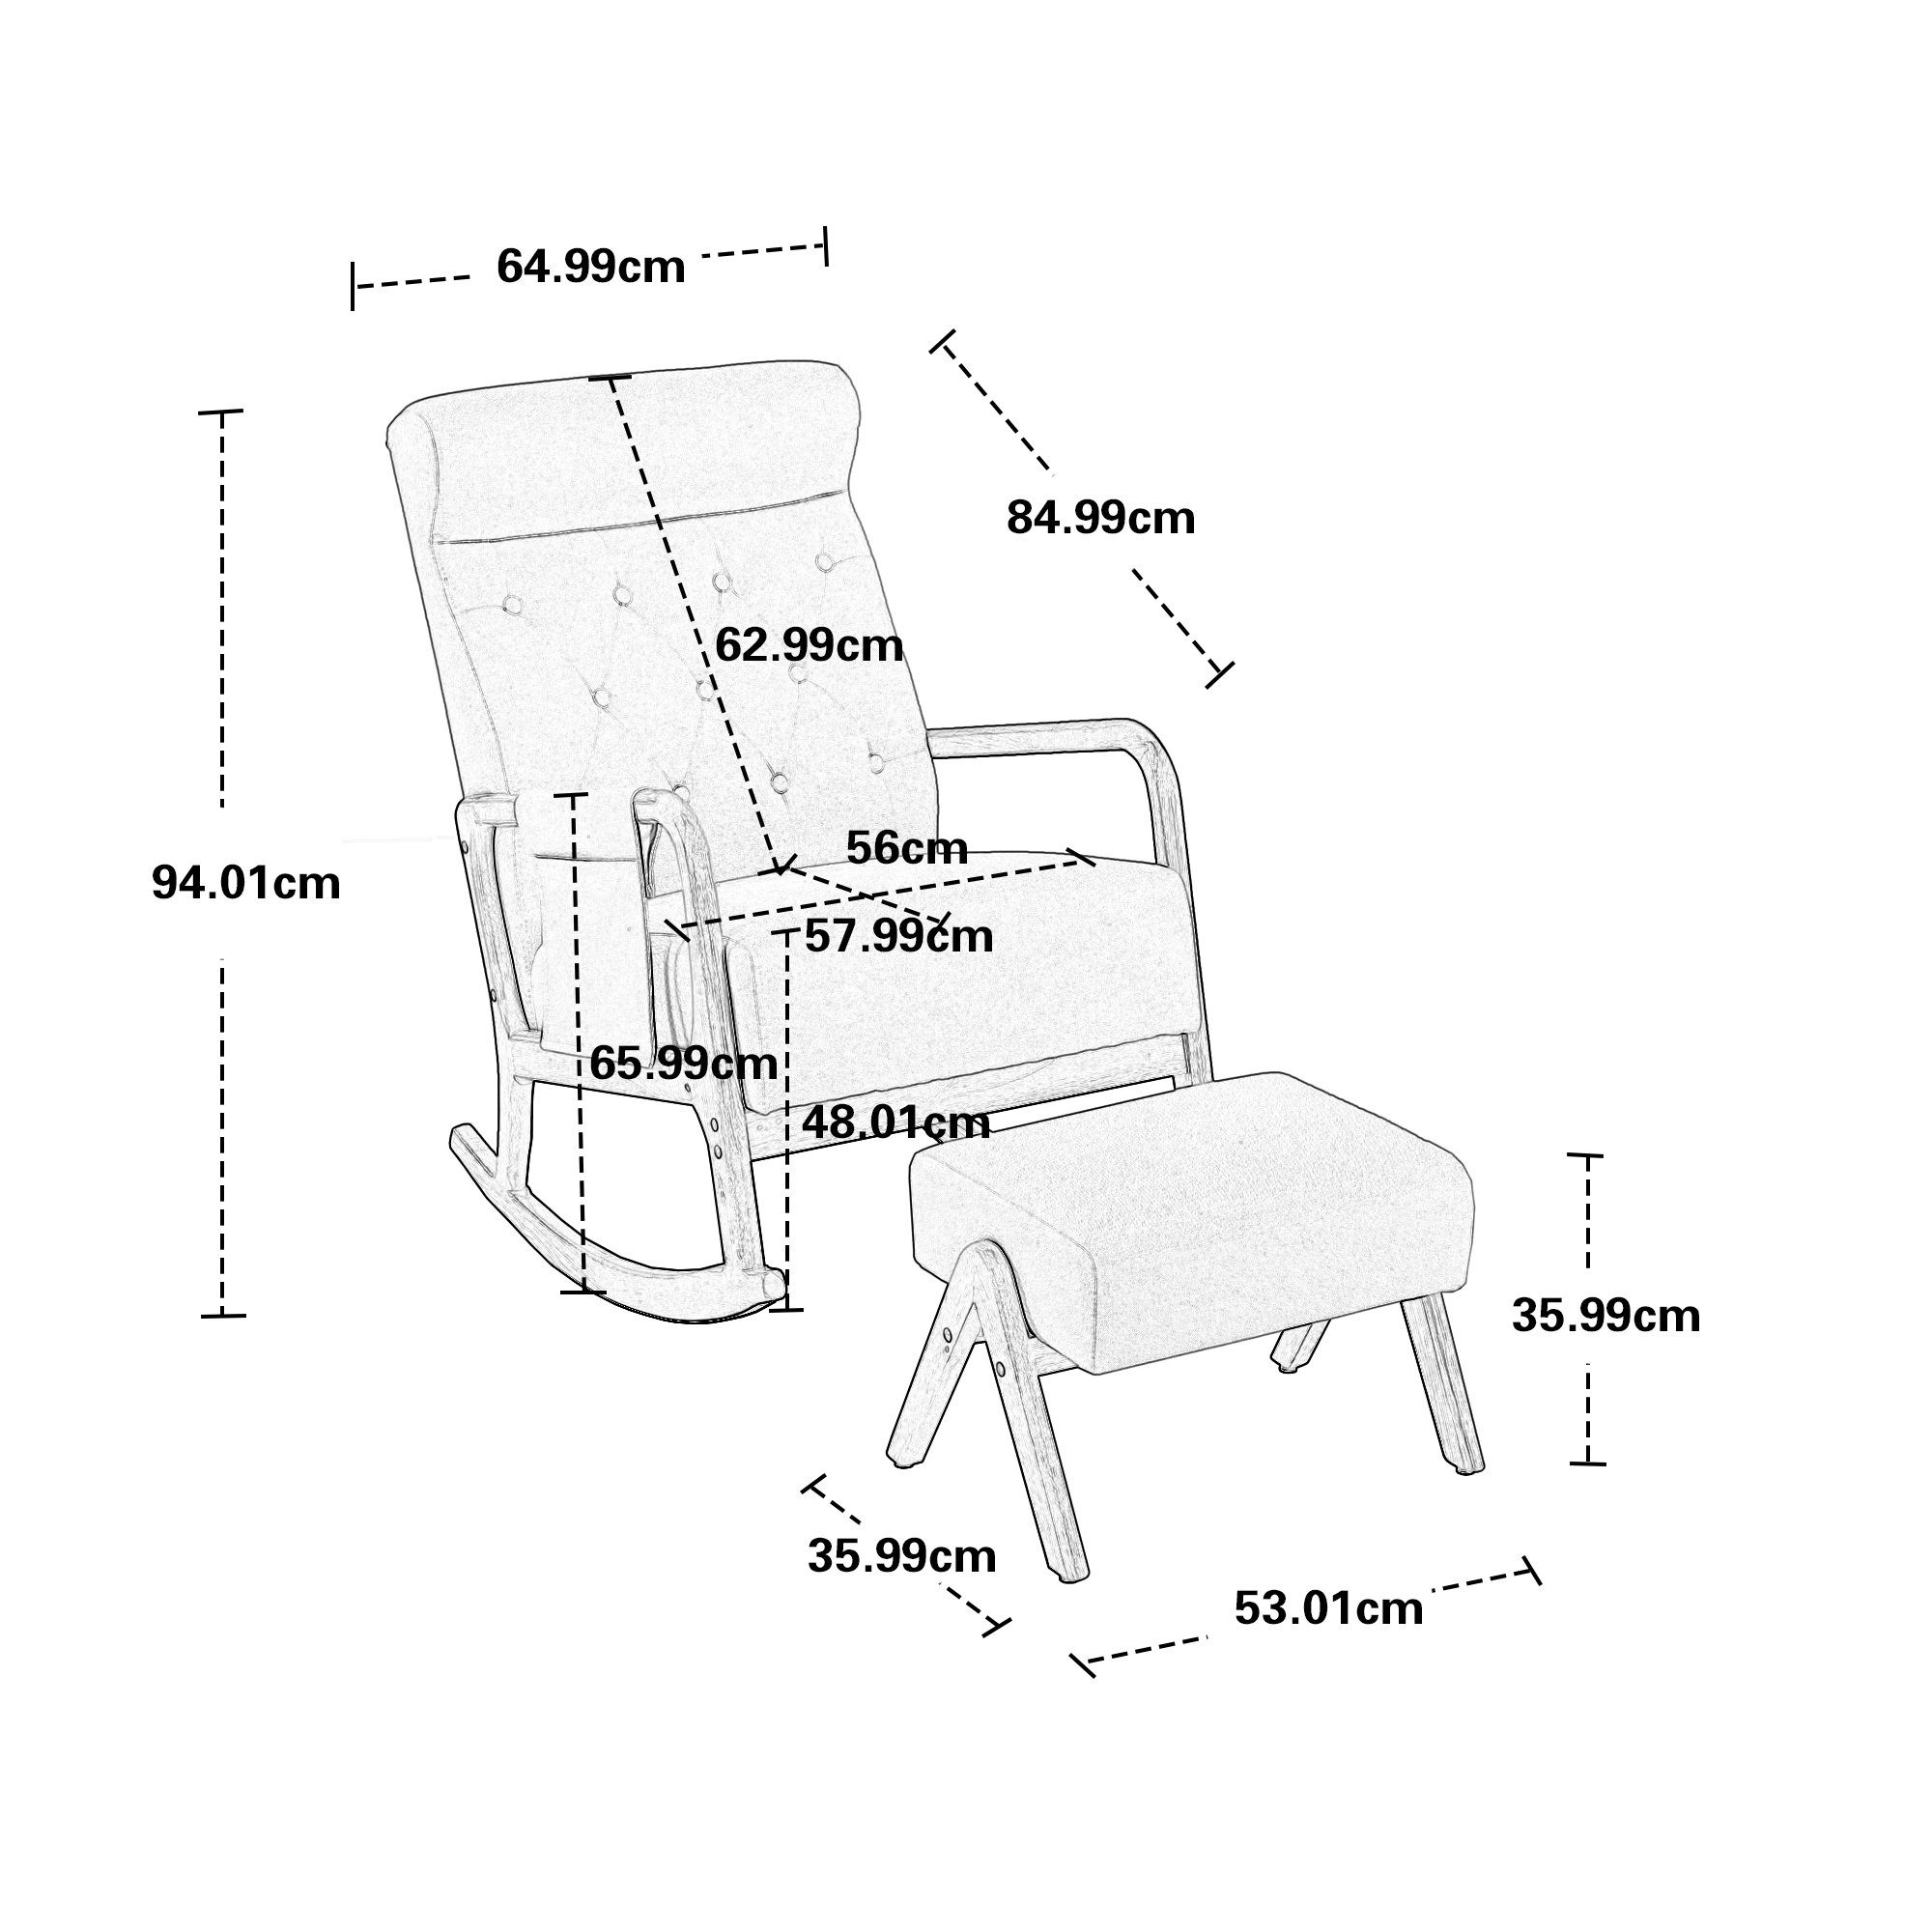 Weiss Odikalo mehrfarbig Rückenlehne Lounge-Sessel Einzelstuhl gepolstert mane Schaukelstuhl